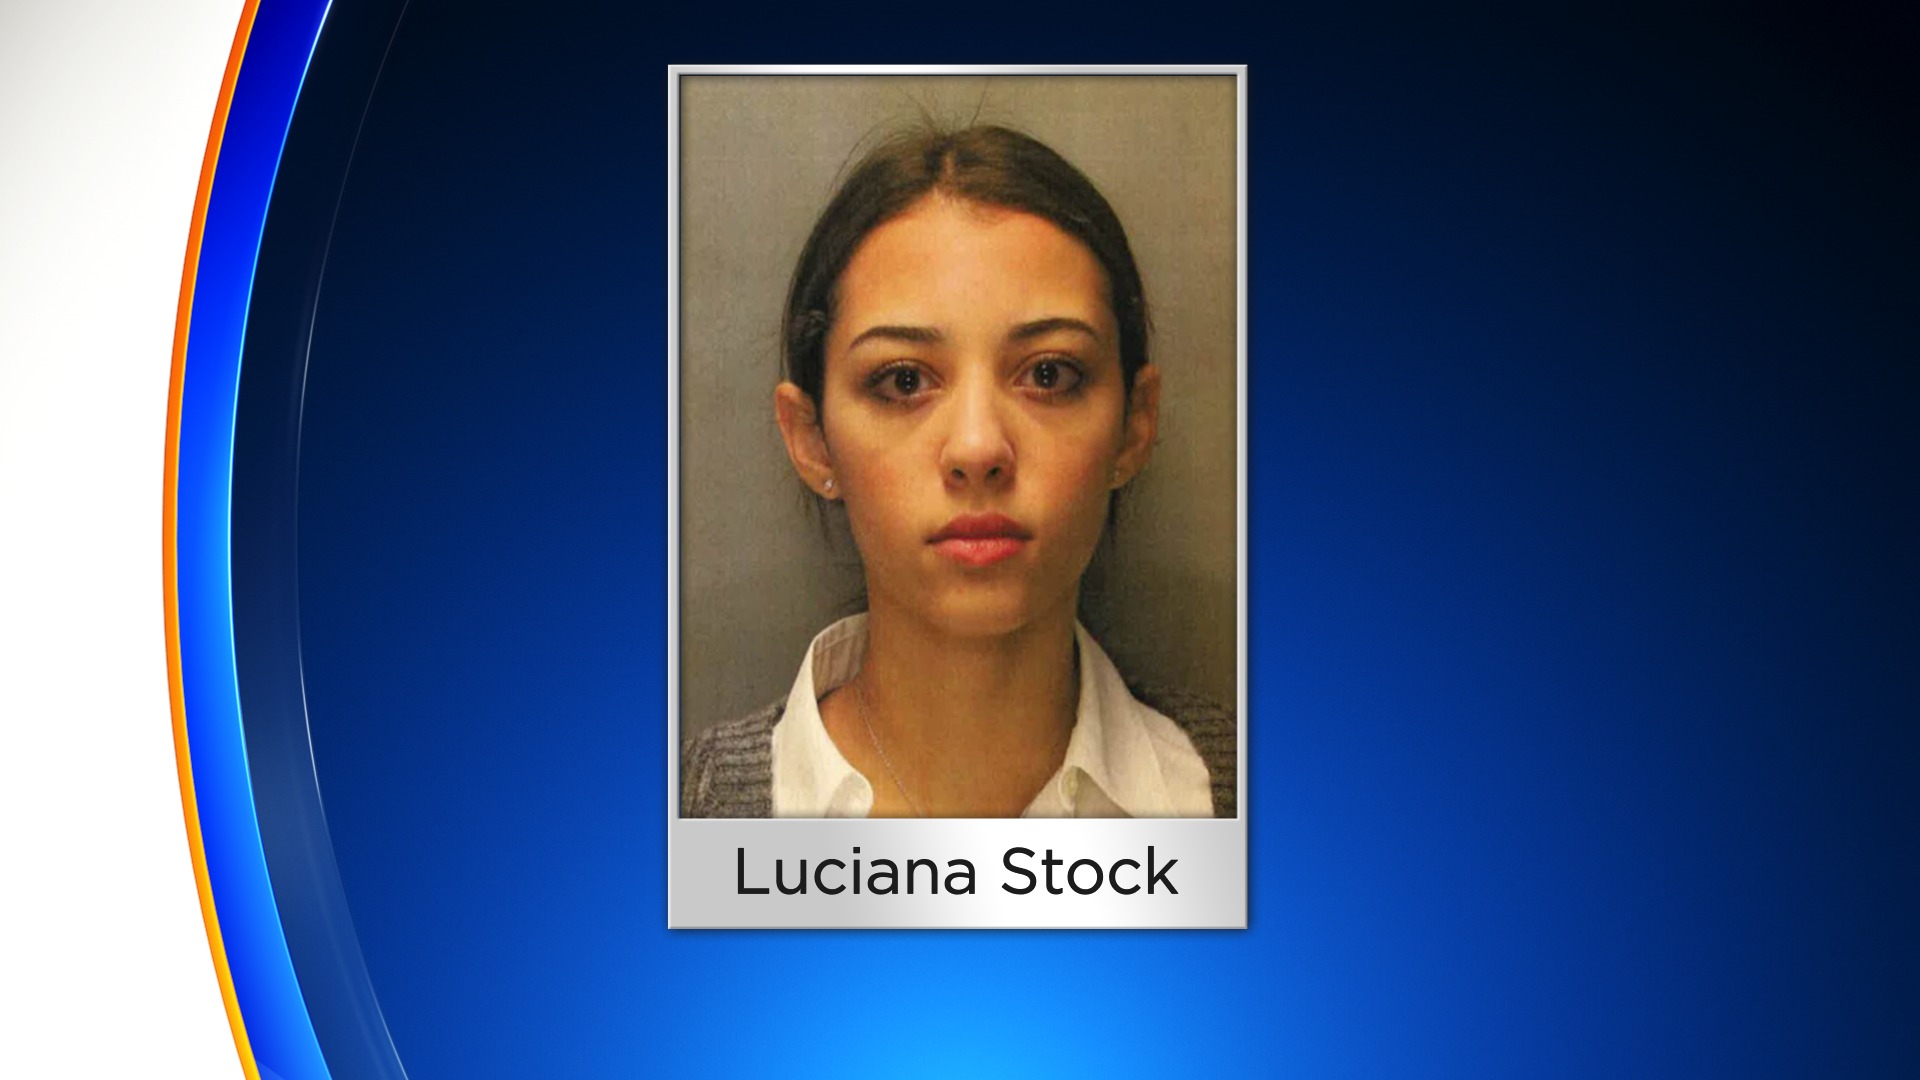 Luciana Stock